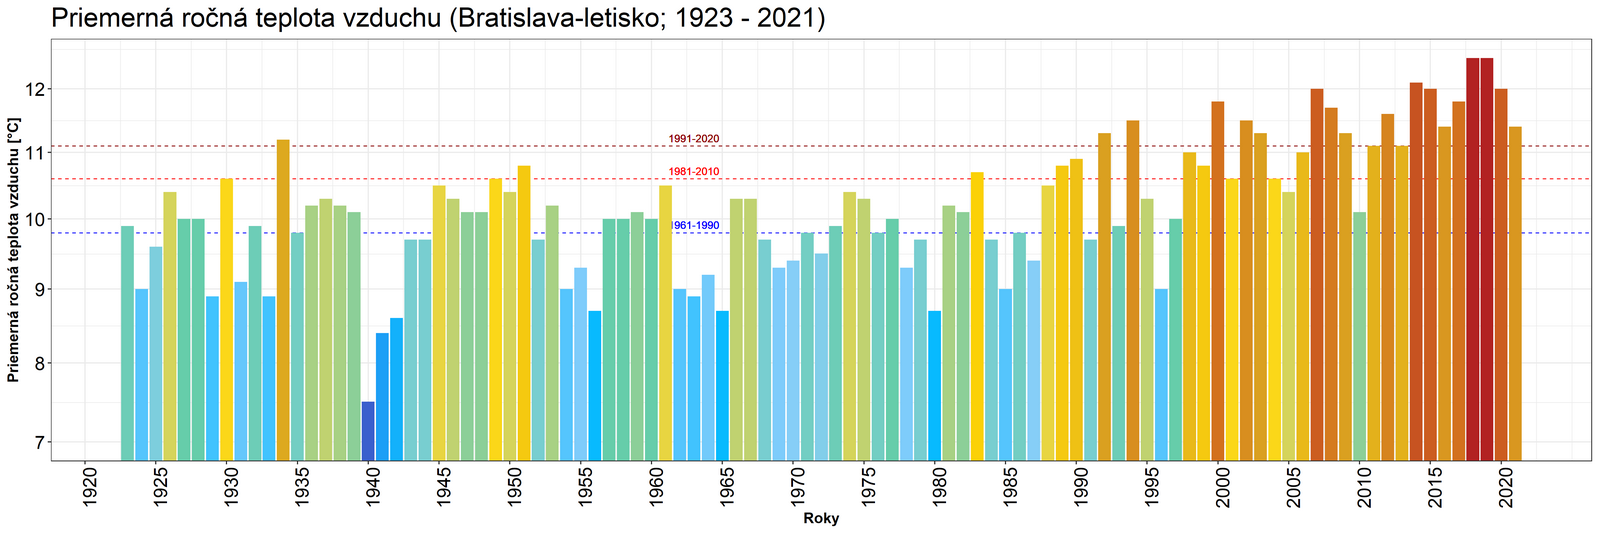 Vývoj a štandardné normály priemernej ročnej teploty vzduchu na 
meteorologickej stanici Bratislava-letisko v období rokov 1923 – 2021.